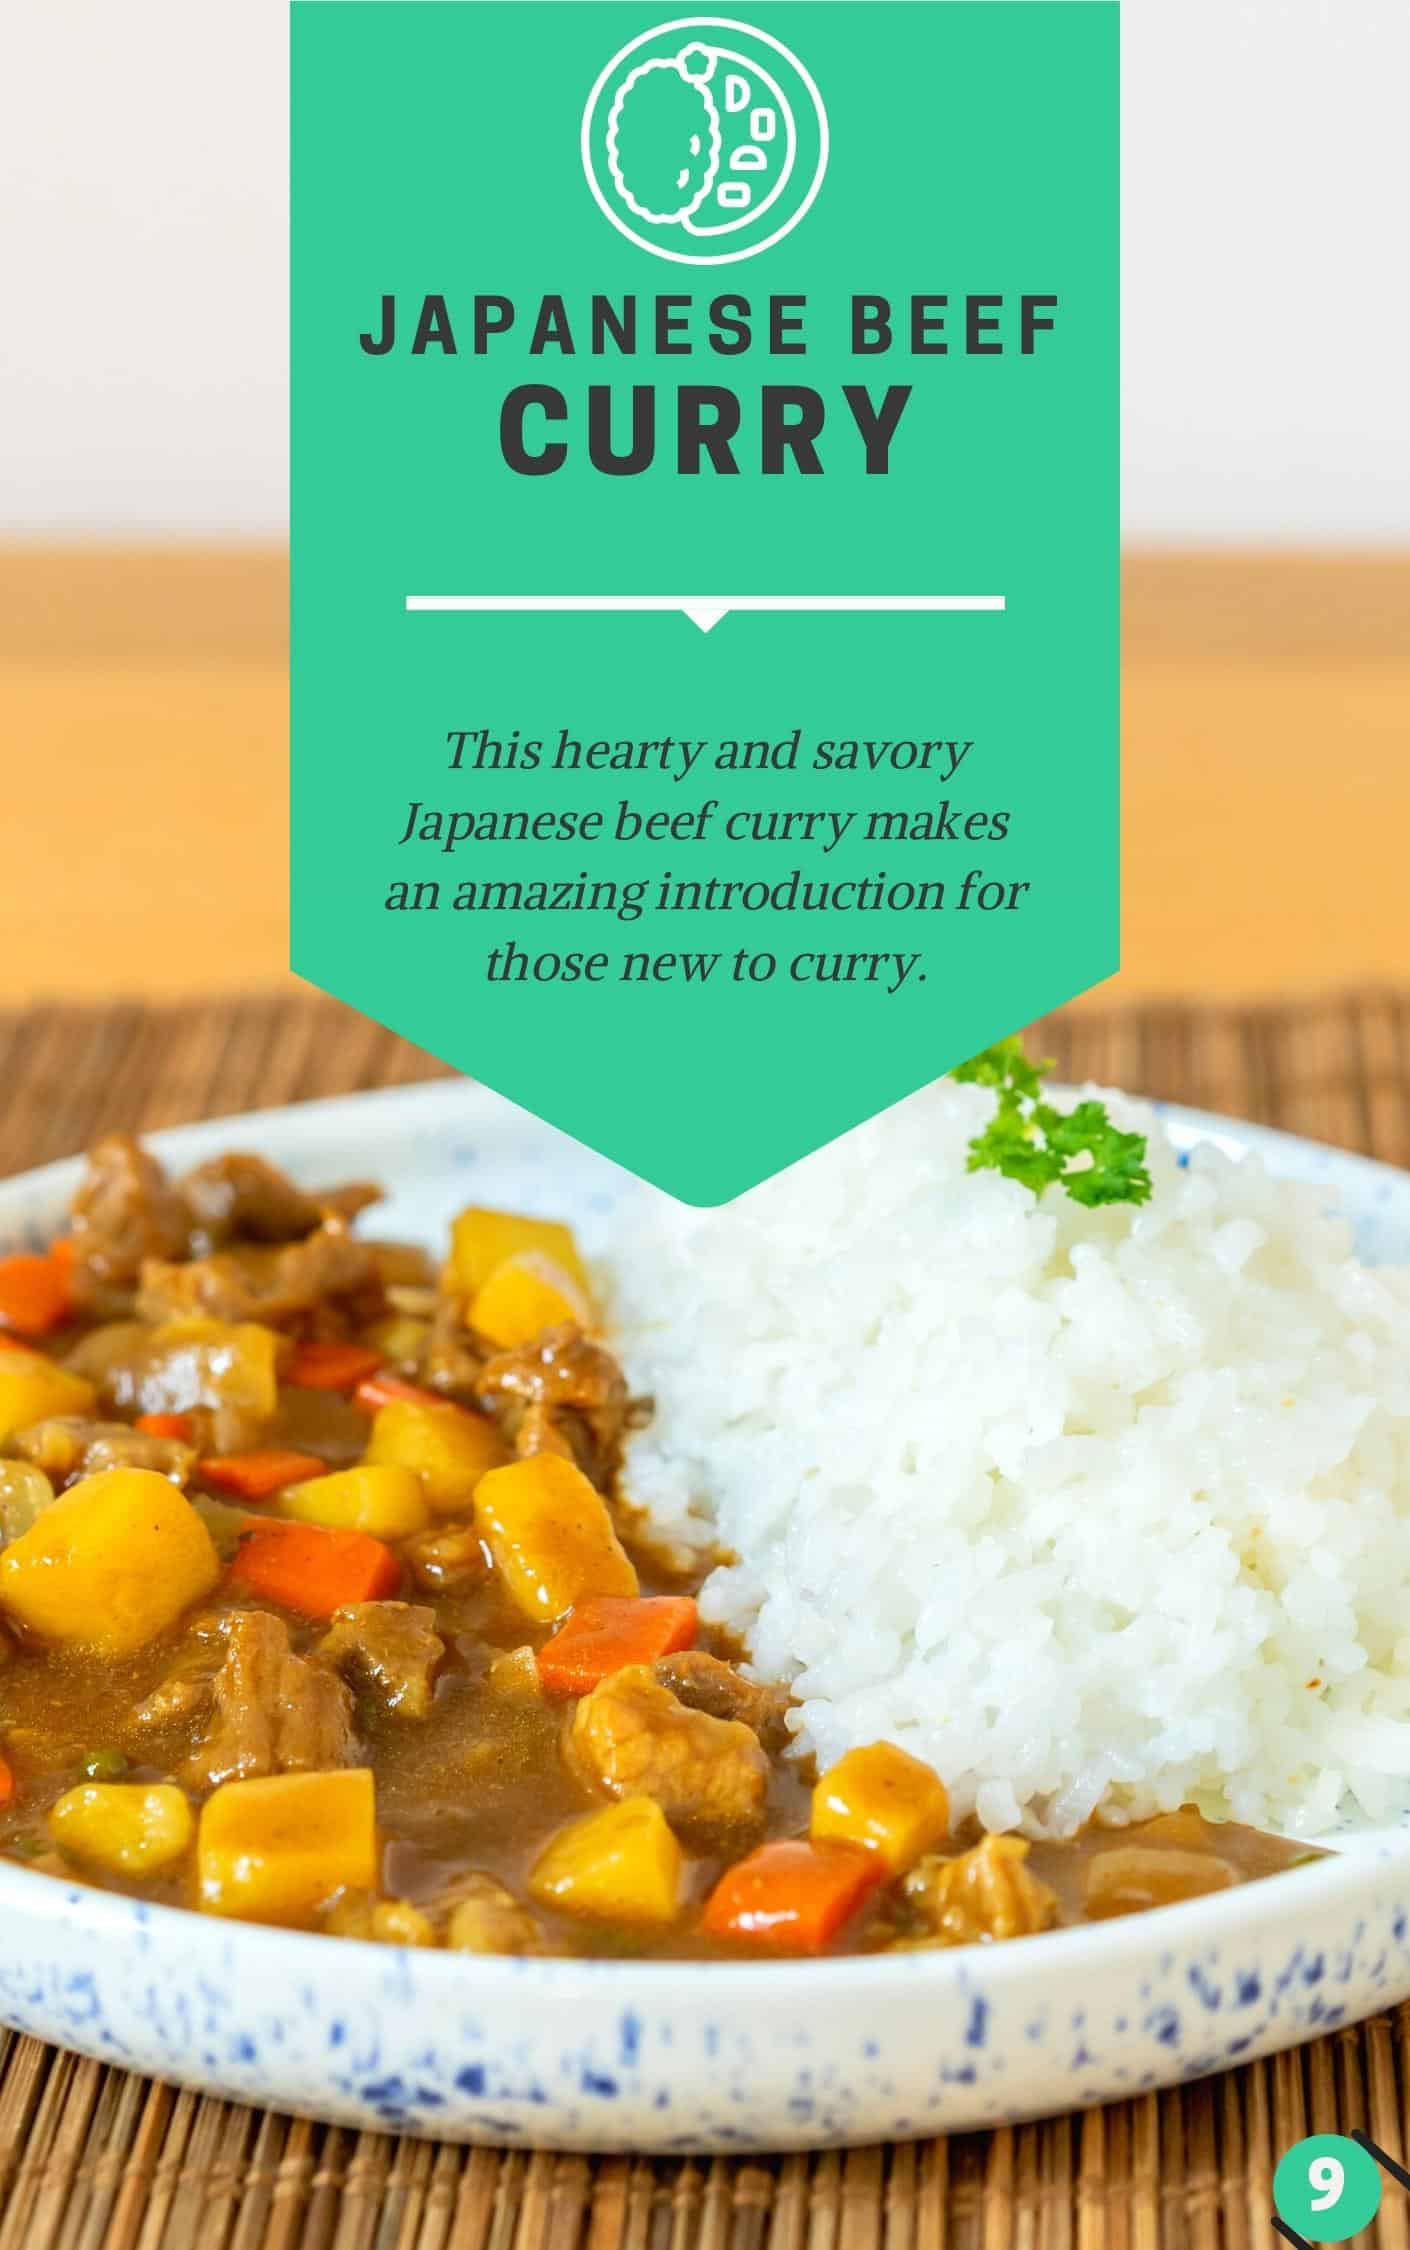 Recette de curry de boeuf japonais